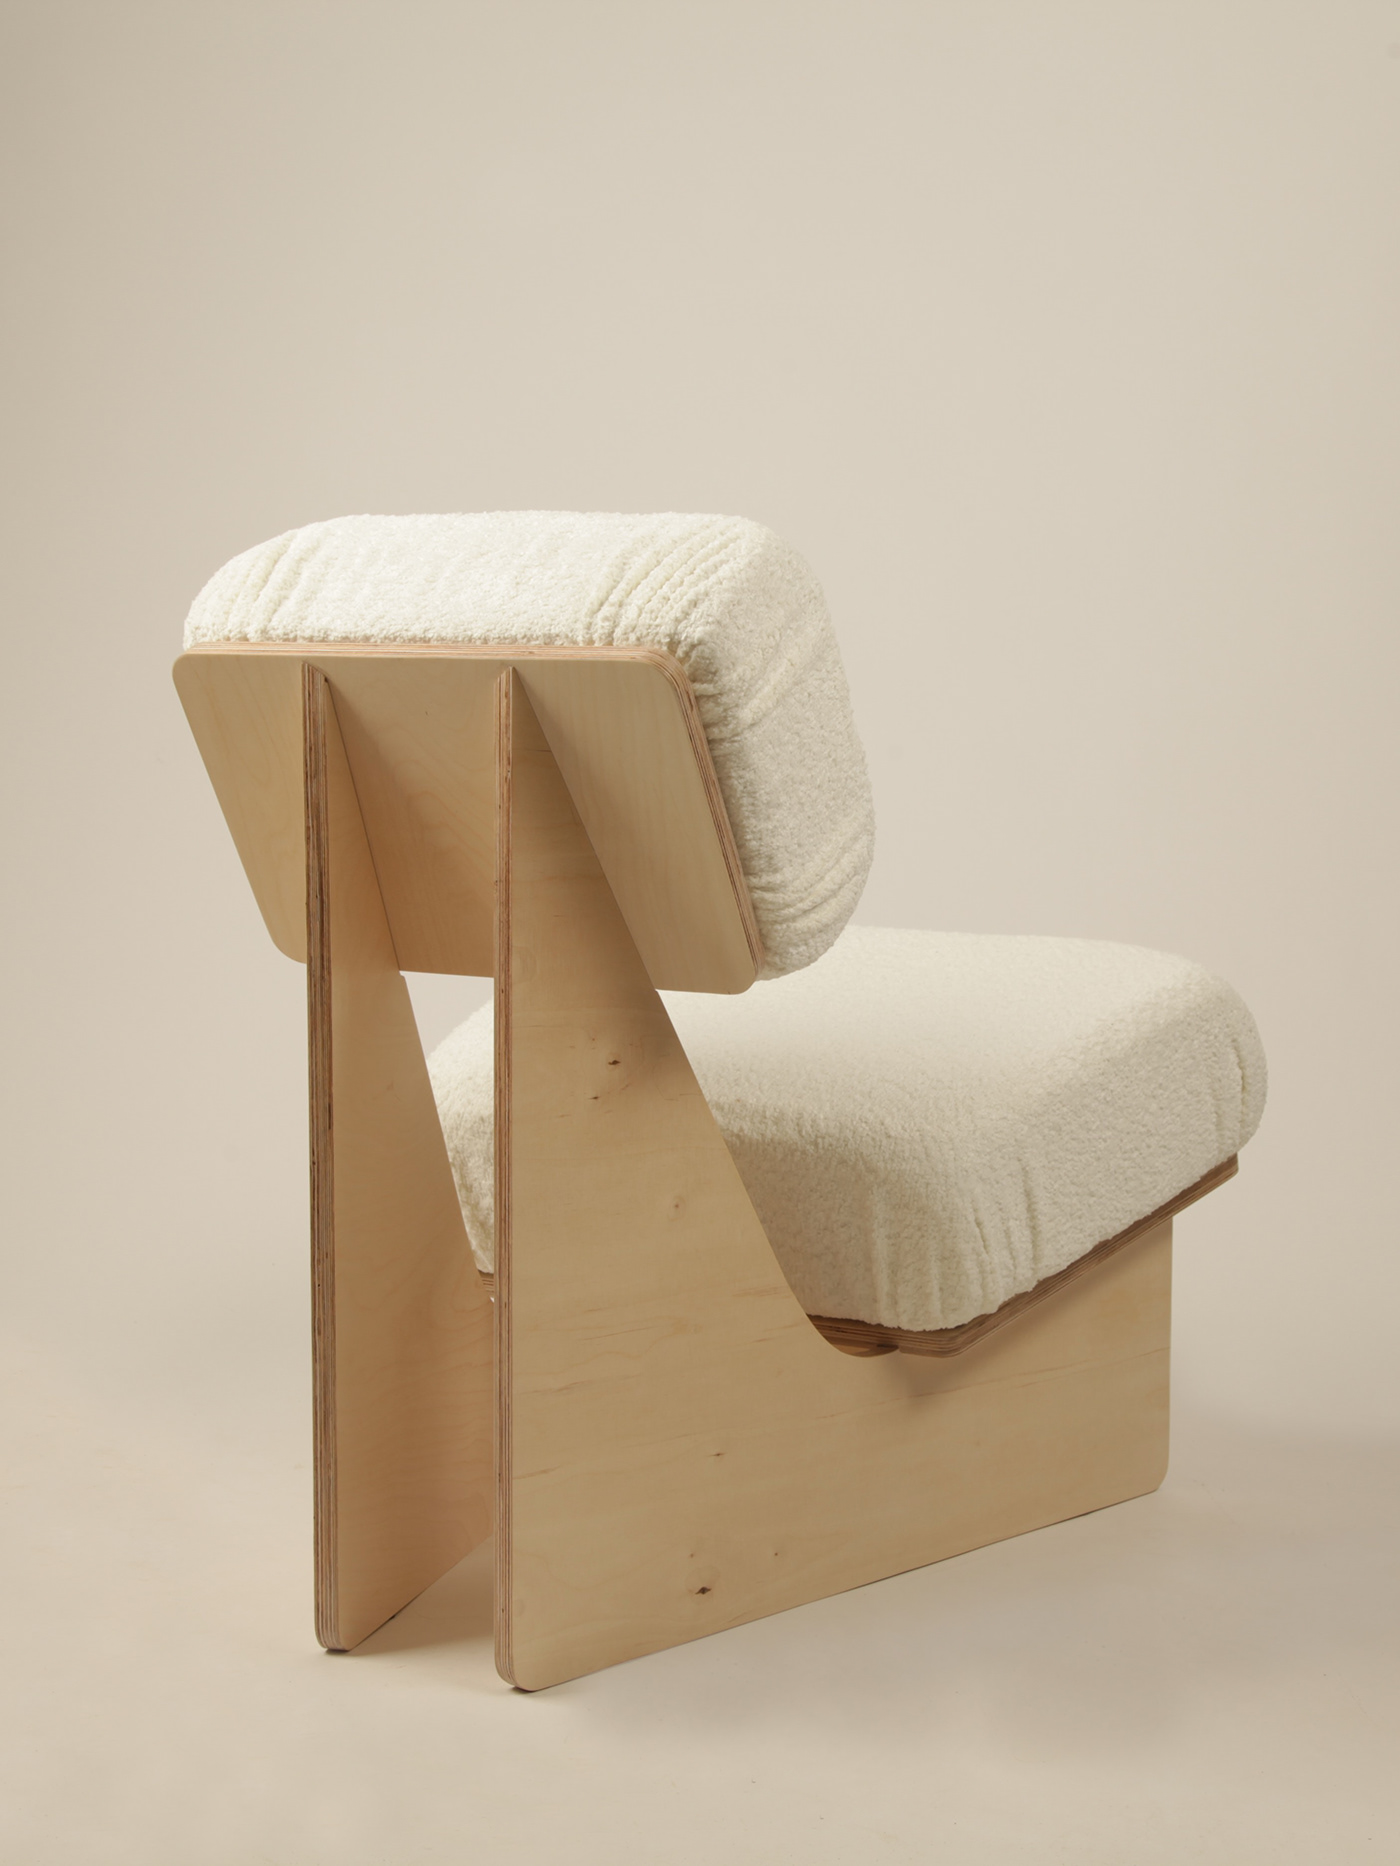 furniture chair armchair ergonomic ergonomic design design Interior